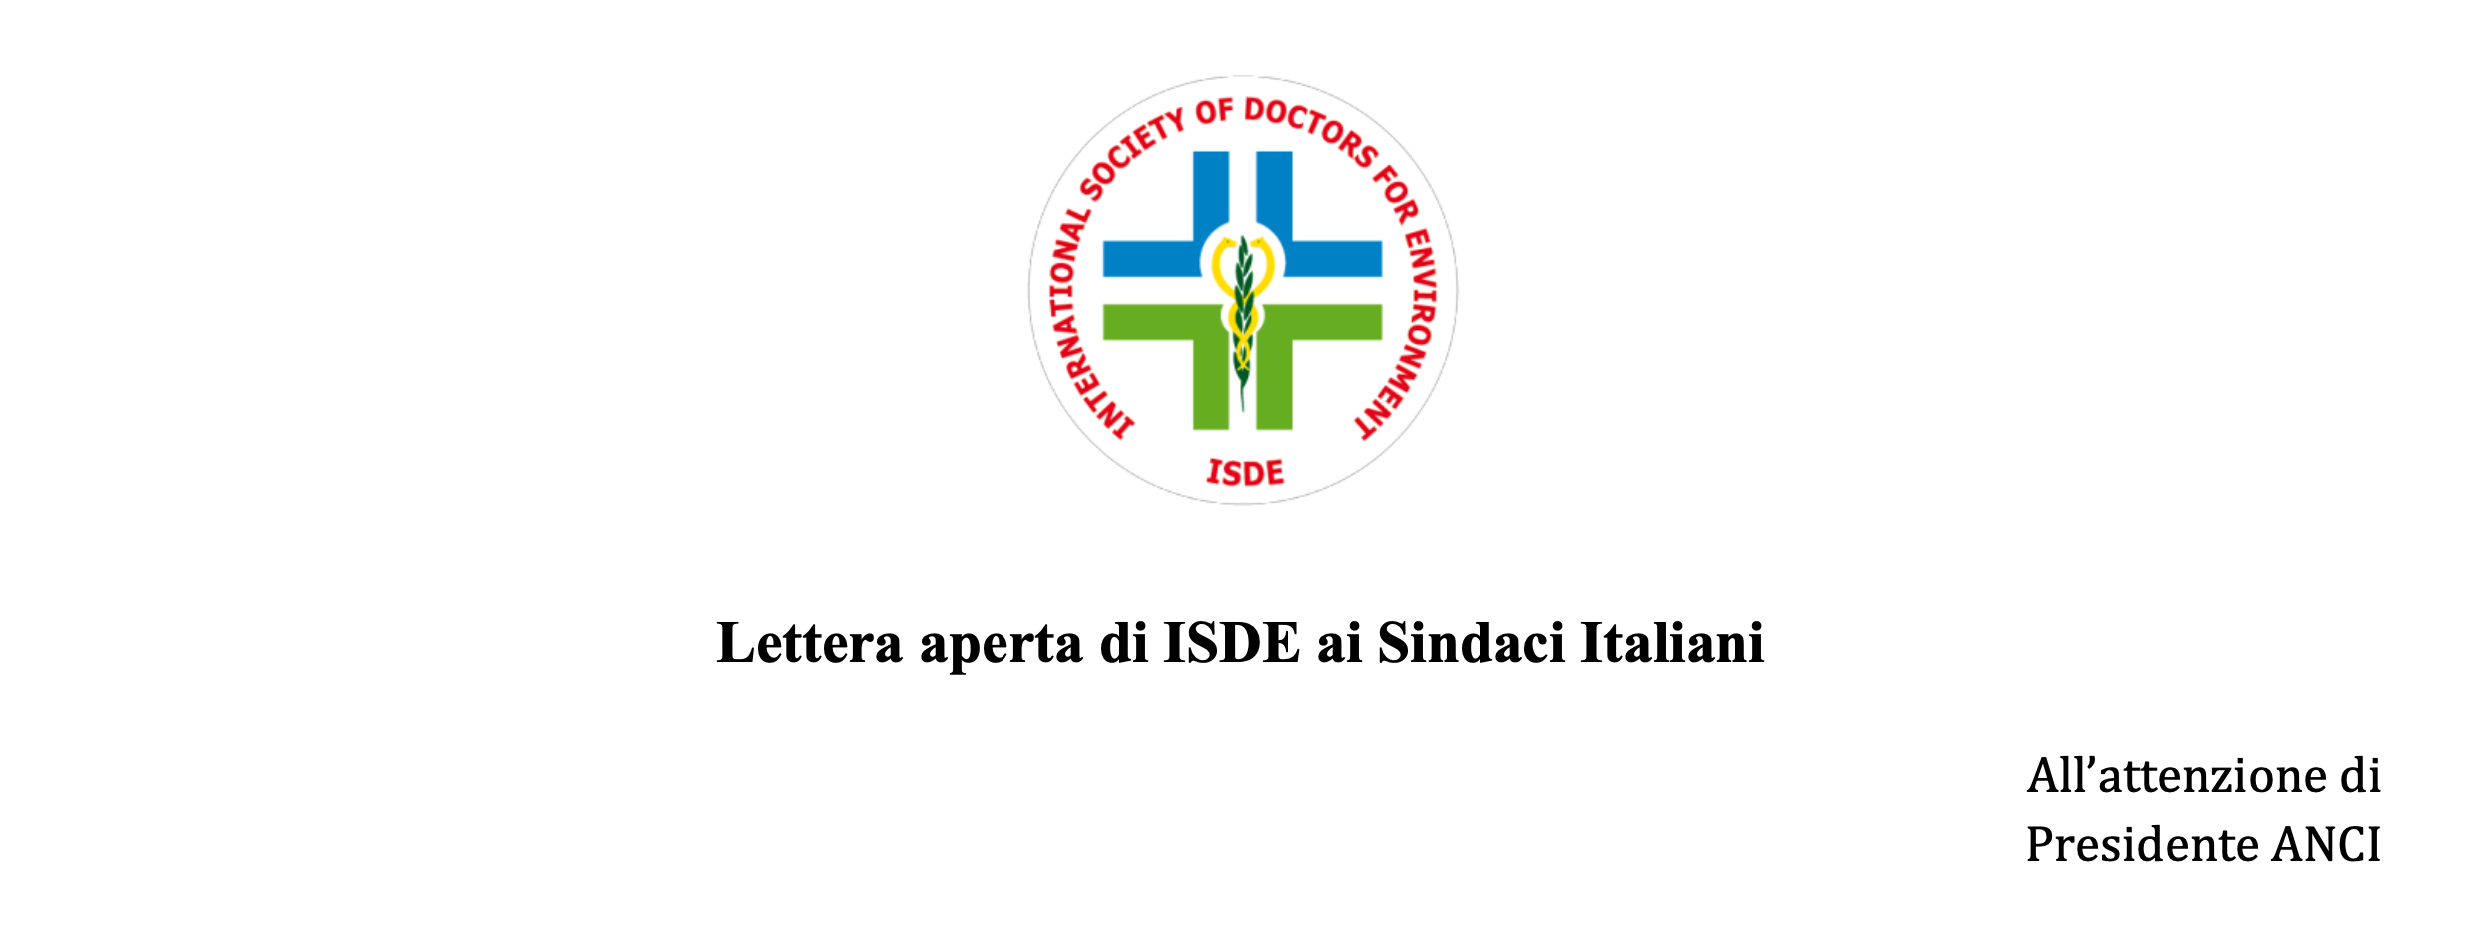 Lettera aperta ISDE ai Sindaci italiani sui campi elettromagnetici